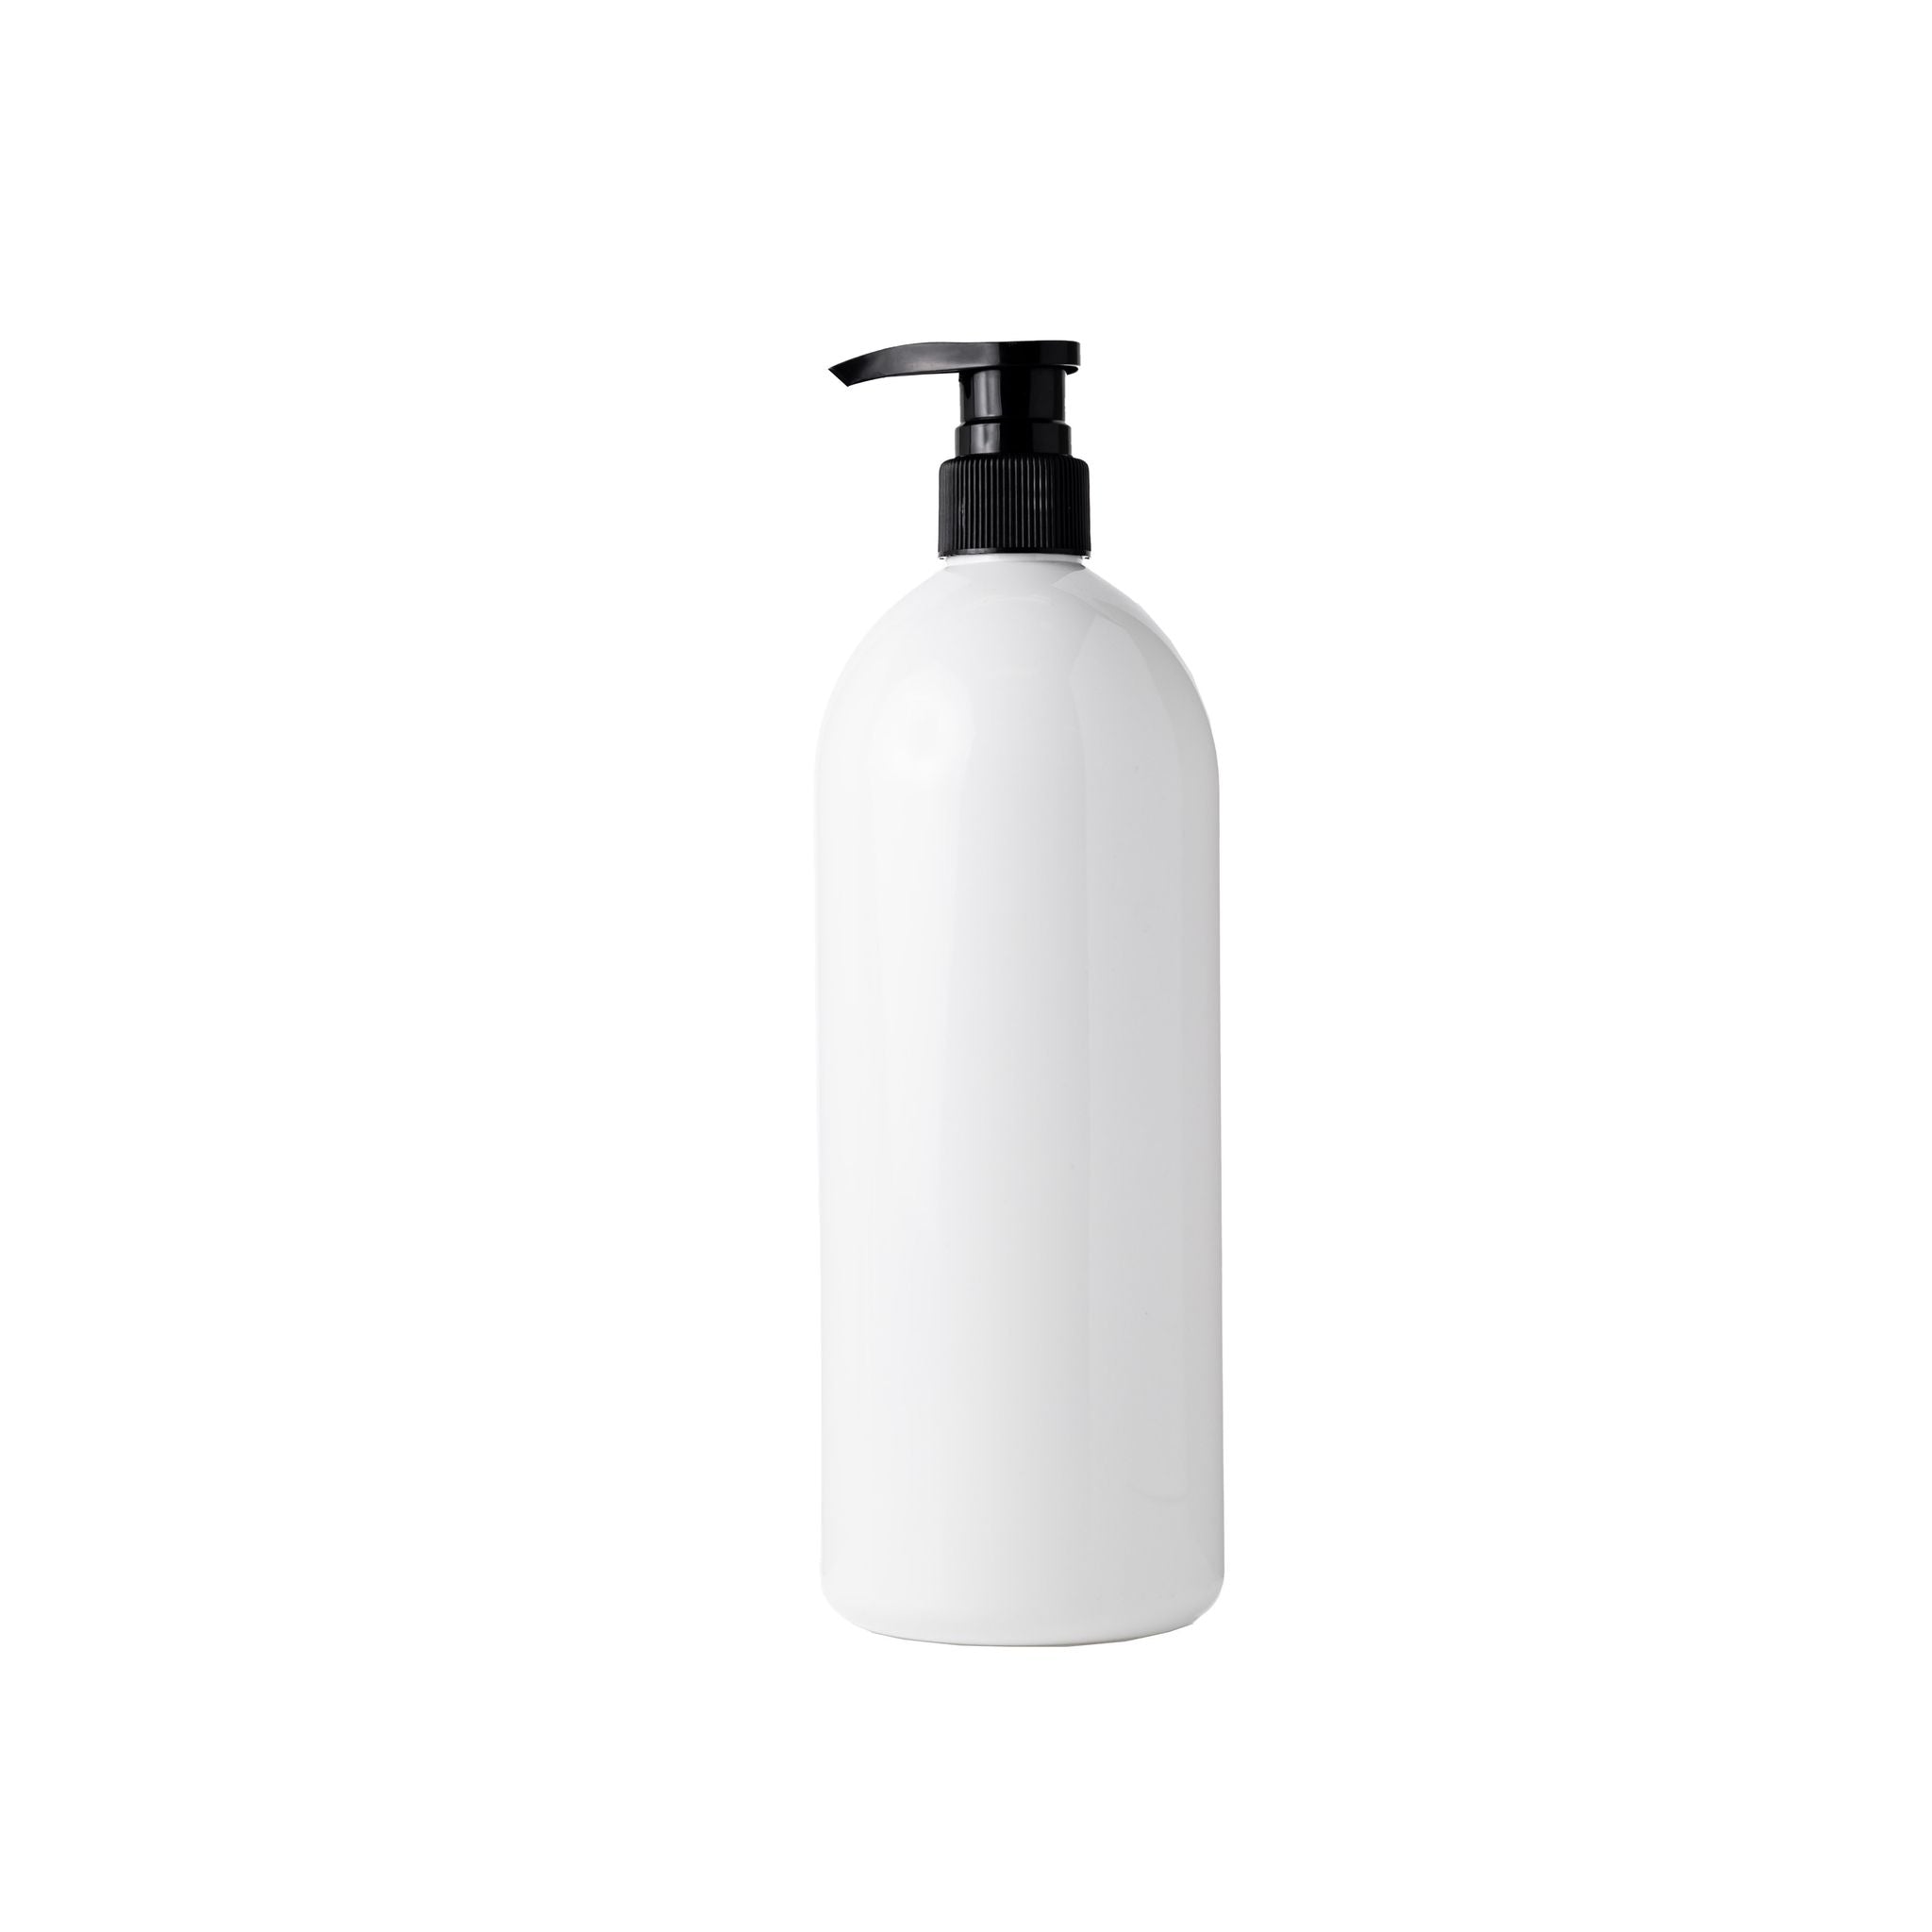 White plastic pump bottles